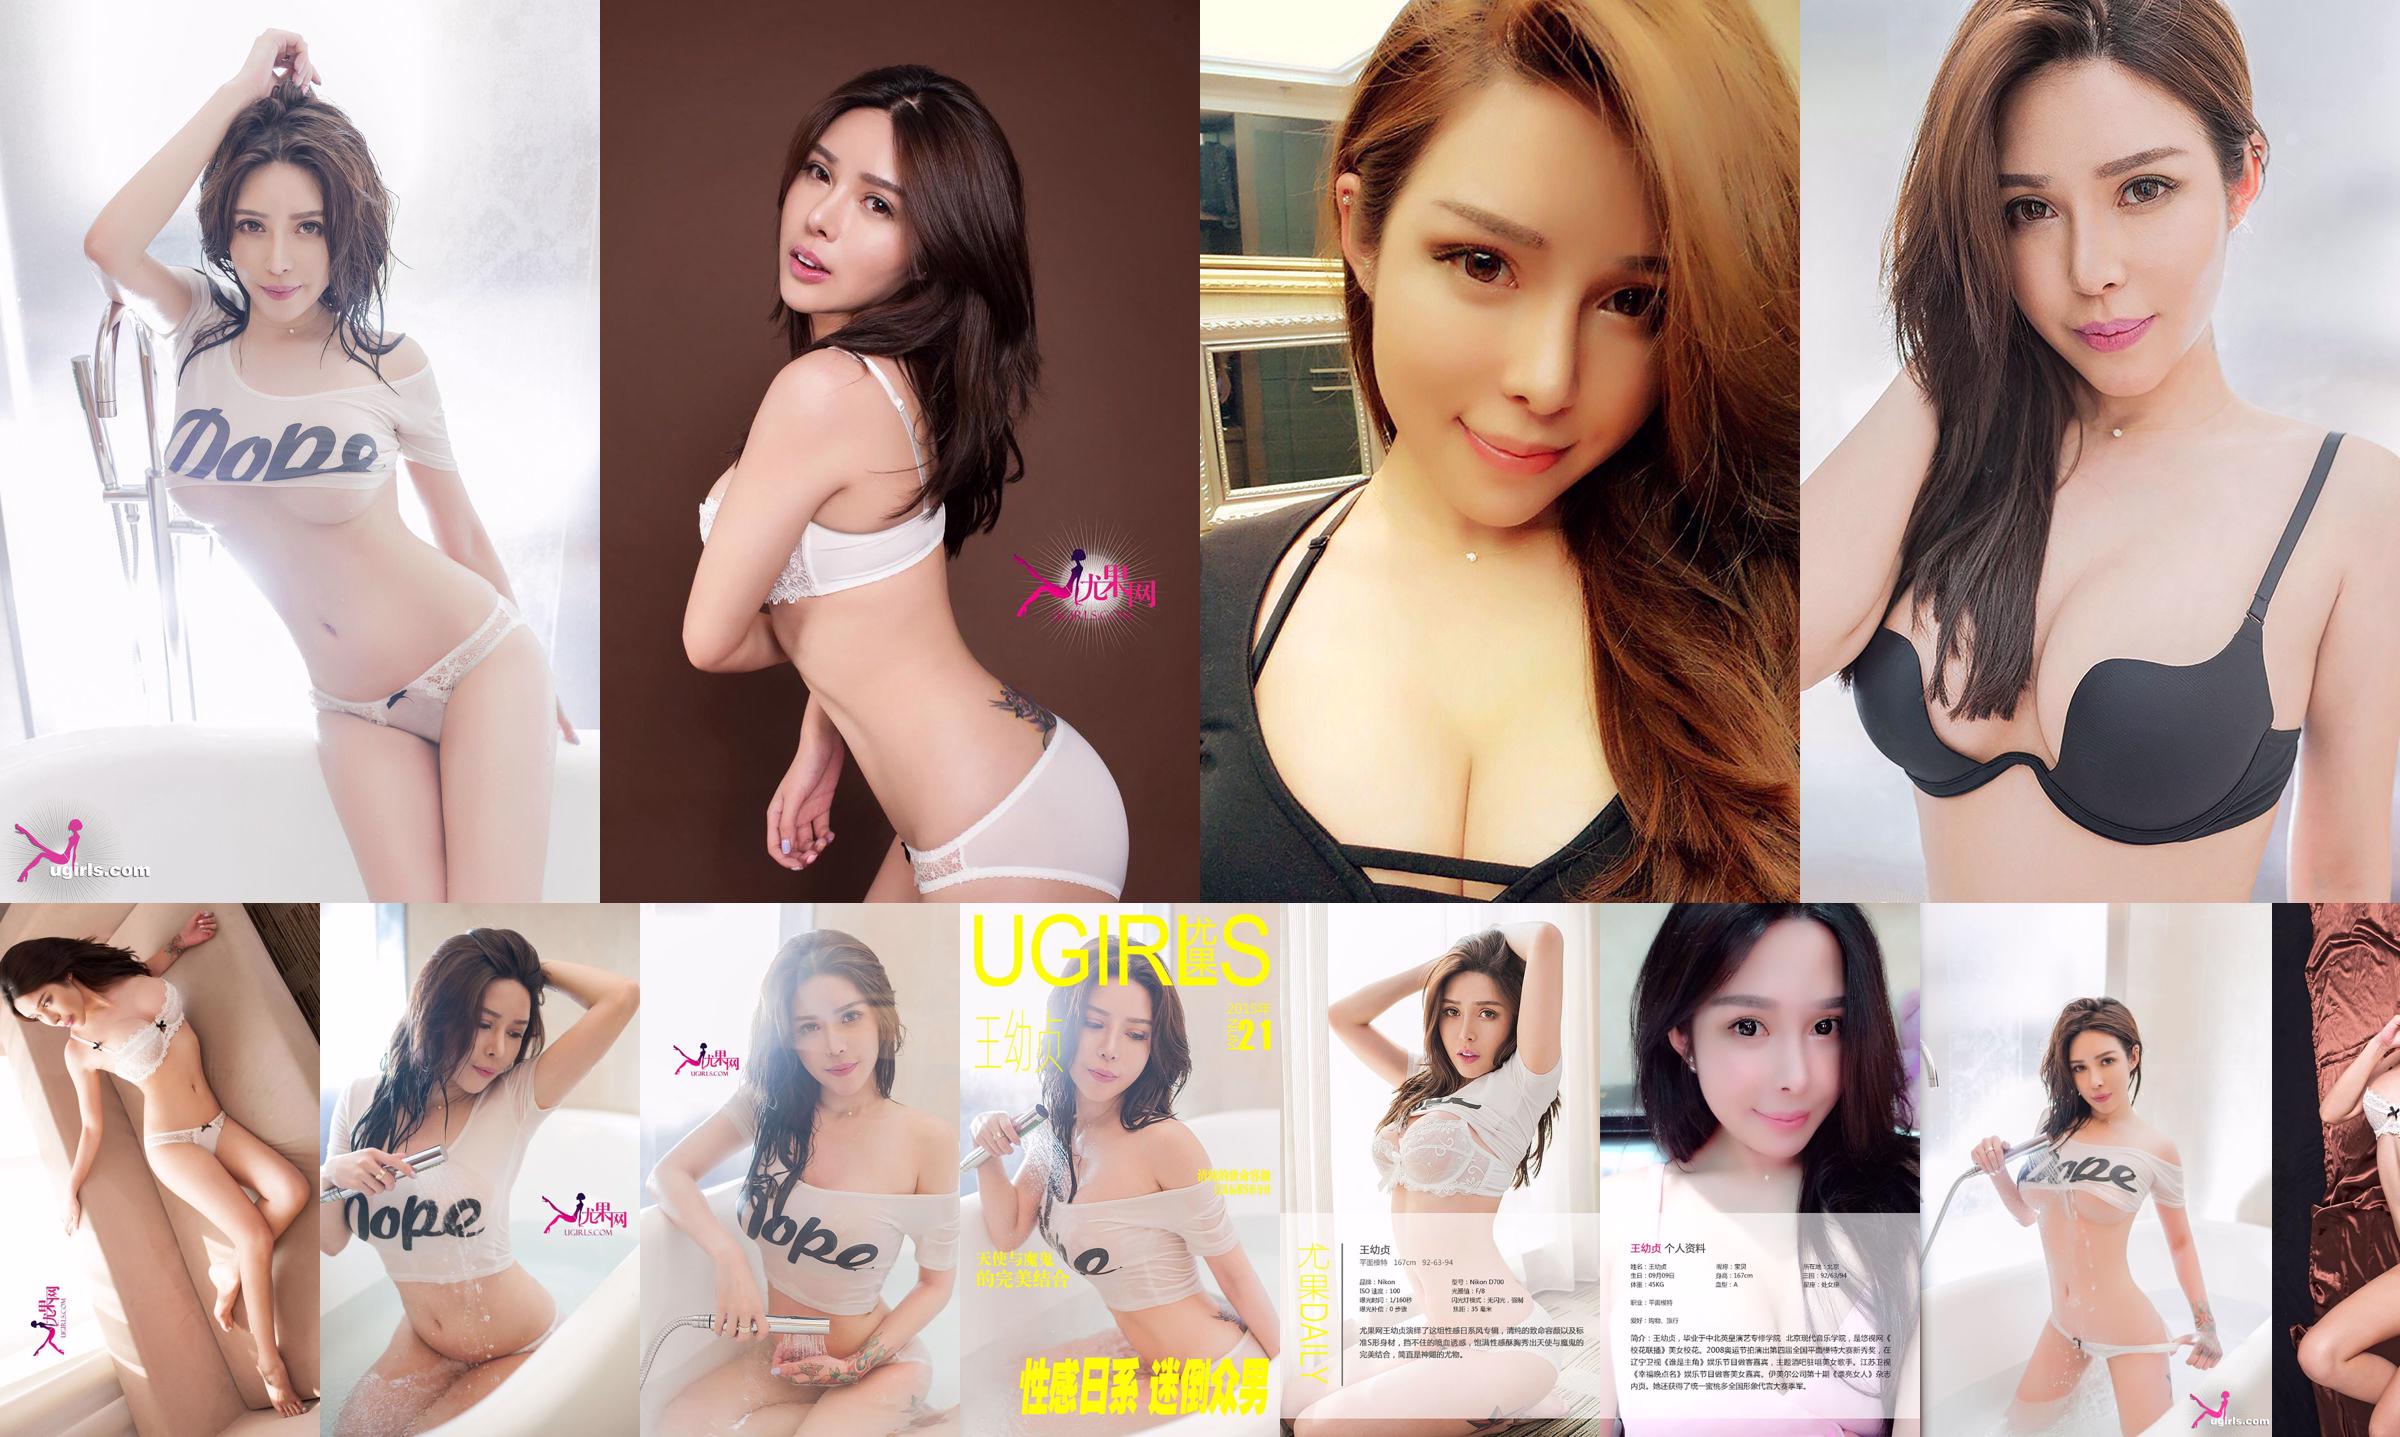 Wang Youzhen "Sexy Japanners, alle mannen betoverend" [Ugirls] No.021 No.771e4d Pagina 1